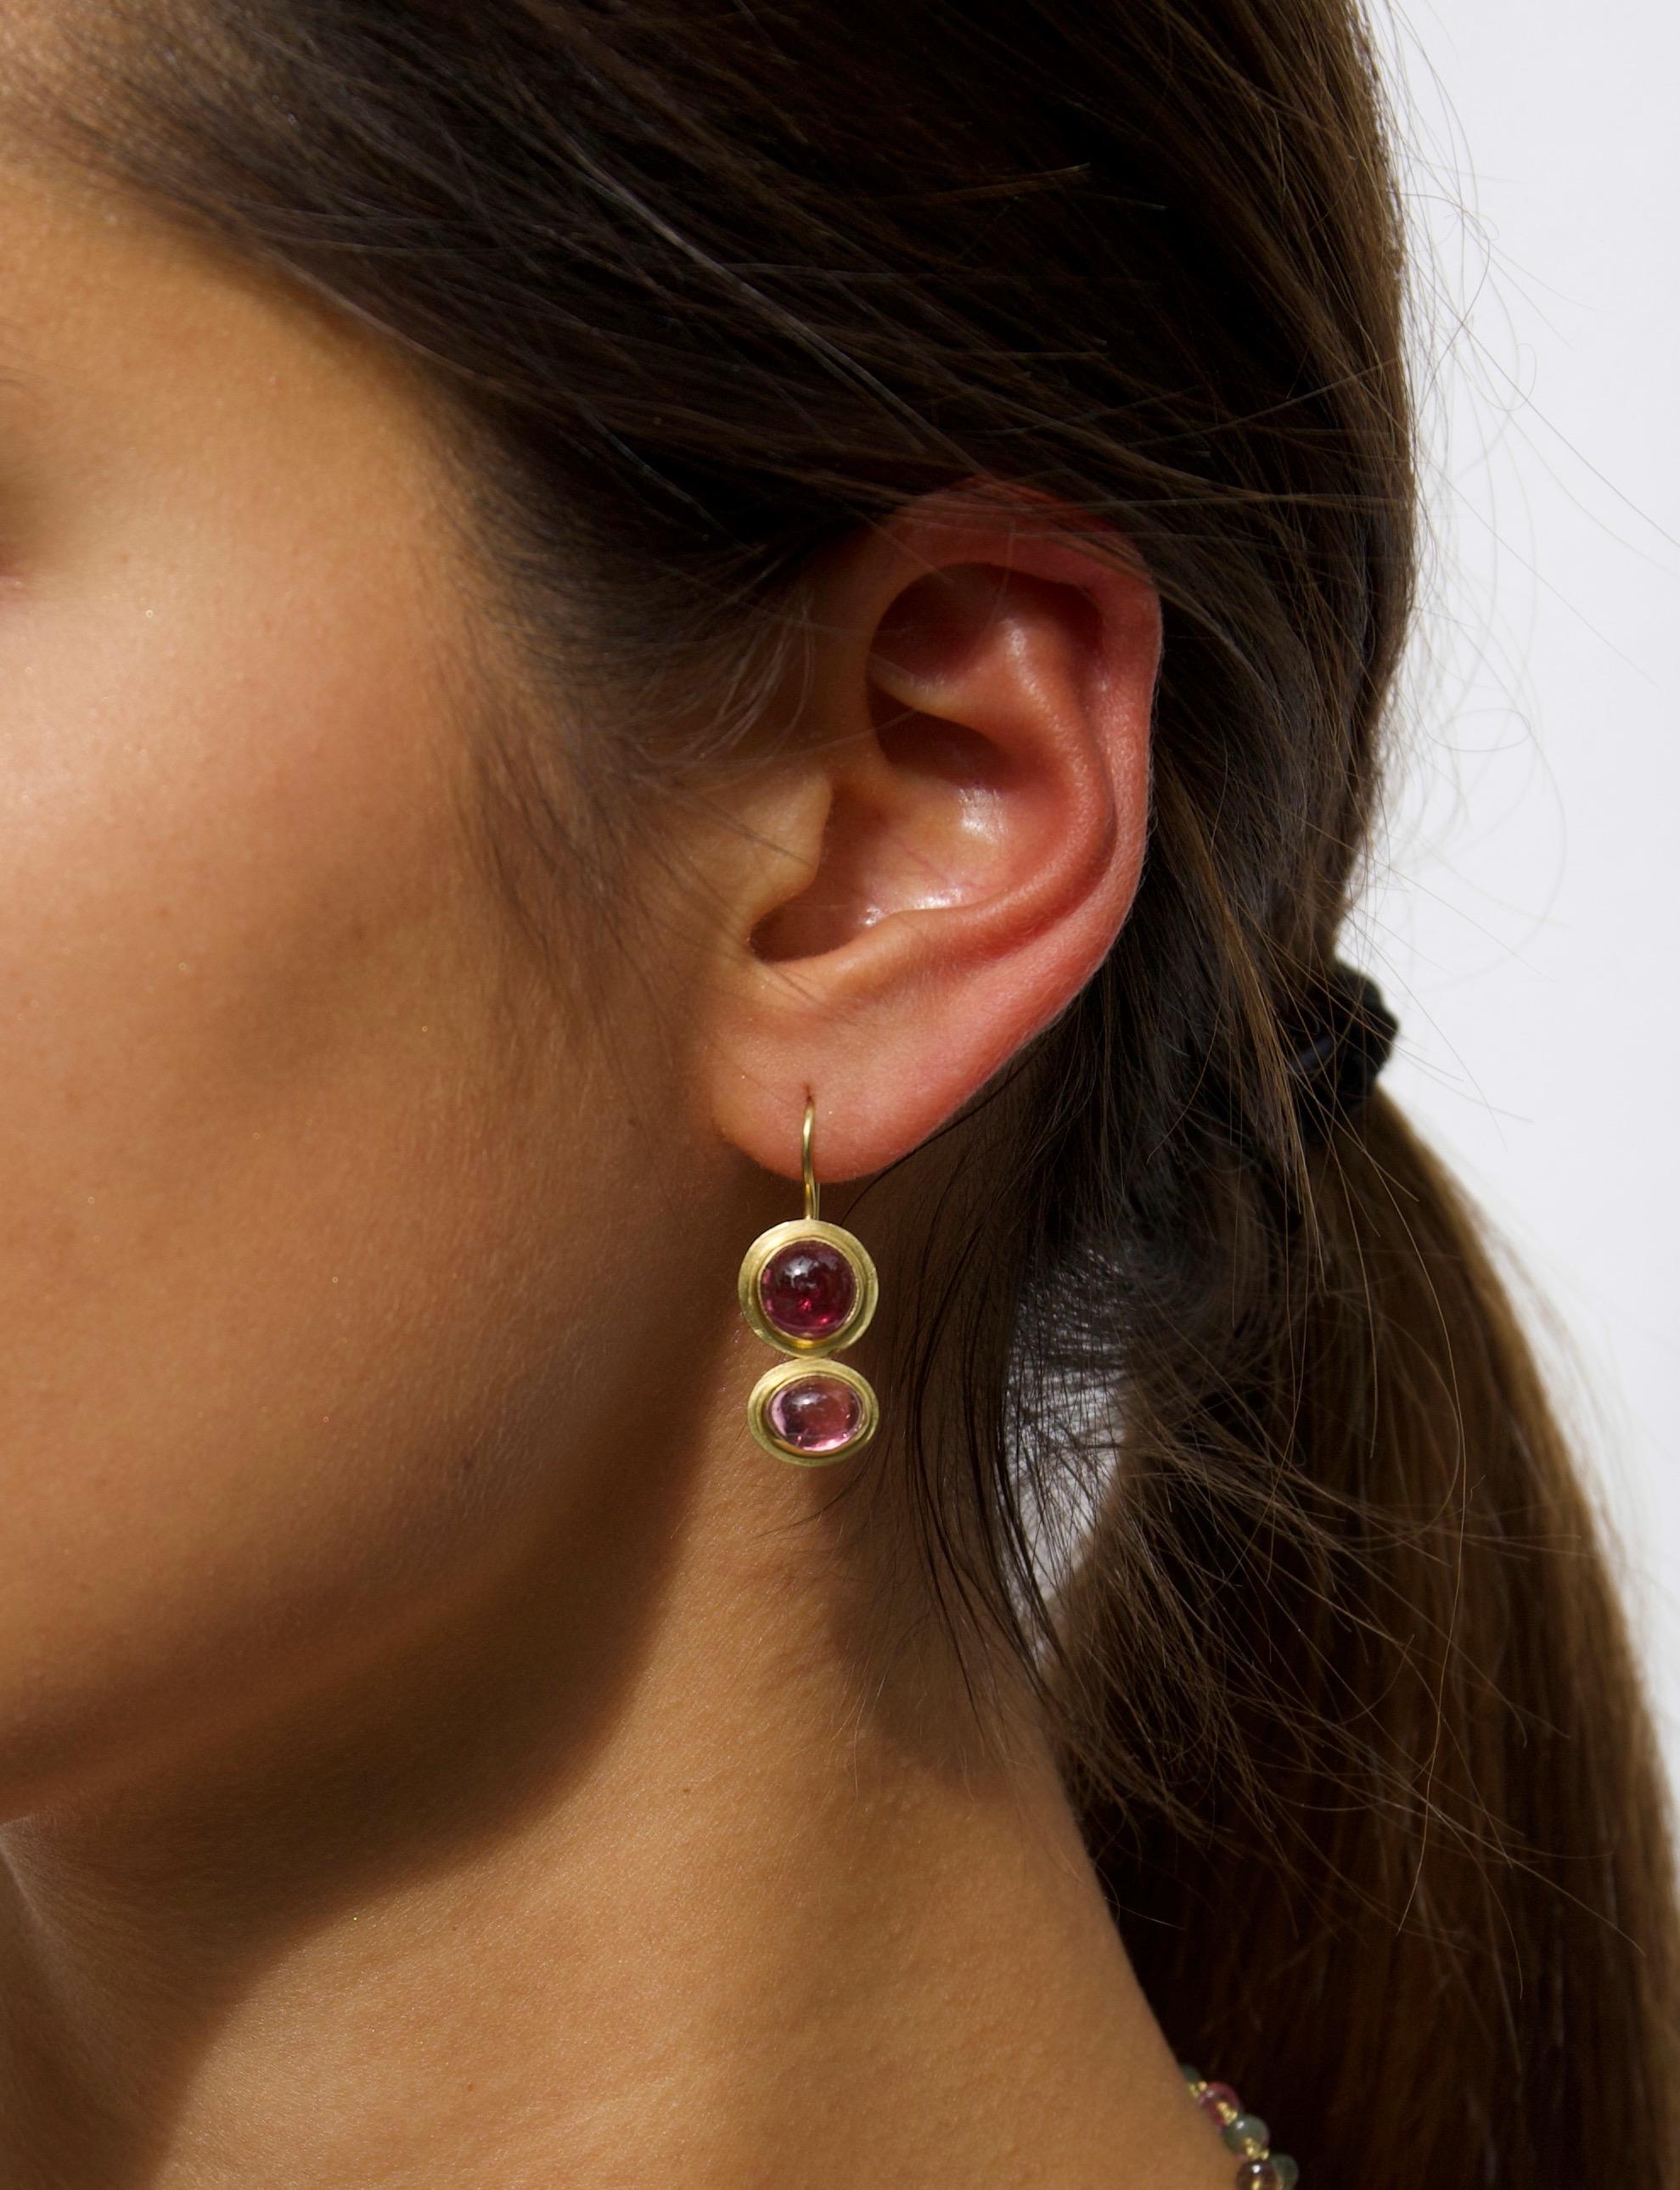 Diese Ohrringe aus 18 Karat Gold mit Turmalinen in blassem Rosa und tiefem Magenta sind feminin, zierlich und sehr angenehm zu tragen. Die perfekte Wahl von Schmuck, um ihn den ganzen Tag zu tragen. Die atemberaubenden und prächtigen rosafarbenen